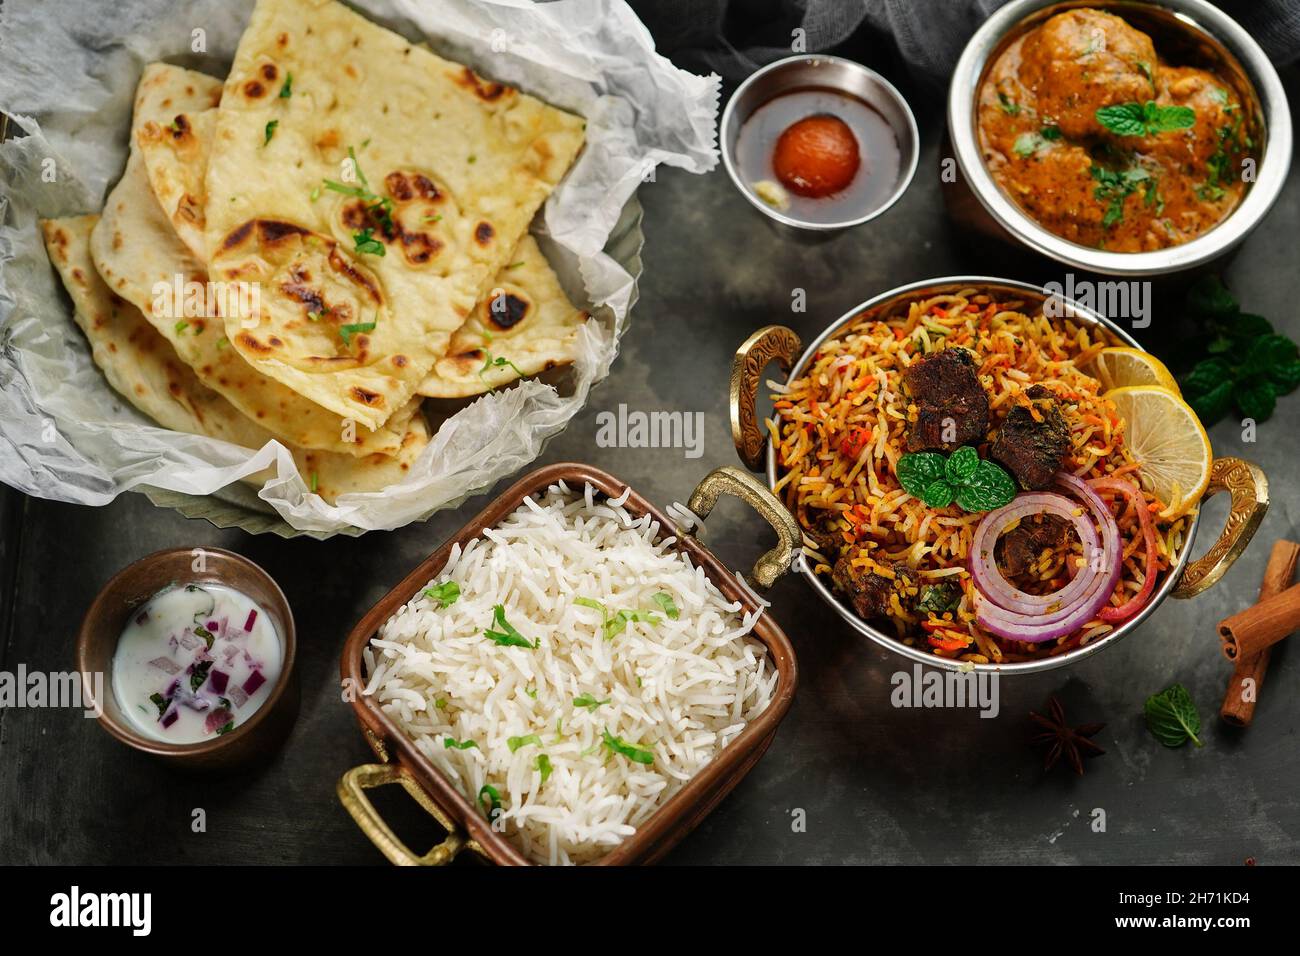 Indische Mahlzeit Thali - Hammelfleisch Biryani, Raita, Malai Kofta, Basmati-Reis, Butter Naan und Gulab Jamun auf einem Tablett serviert Stockfoto